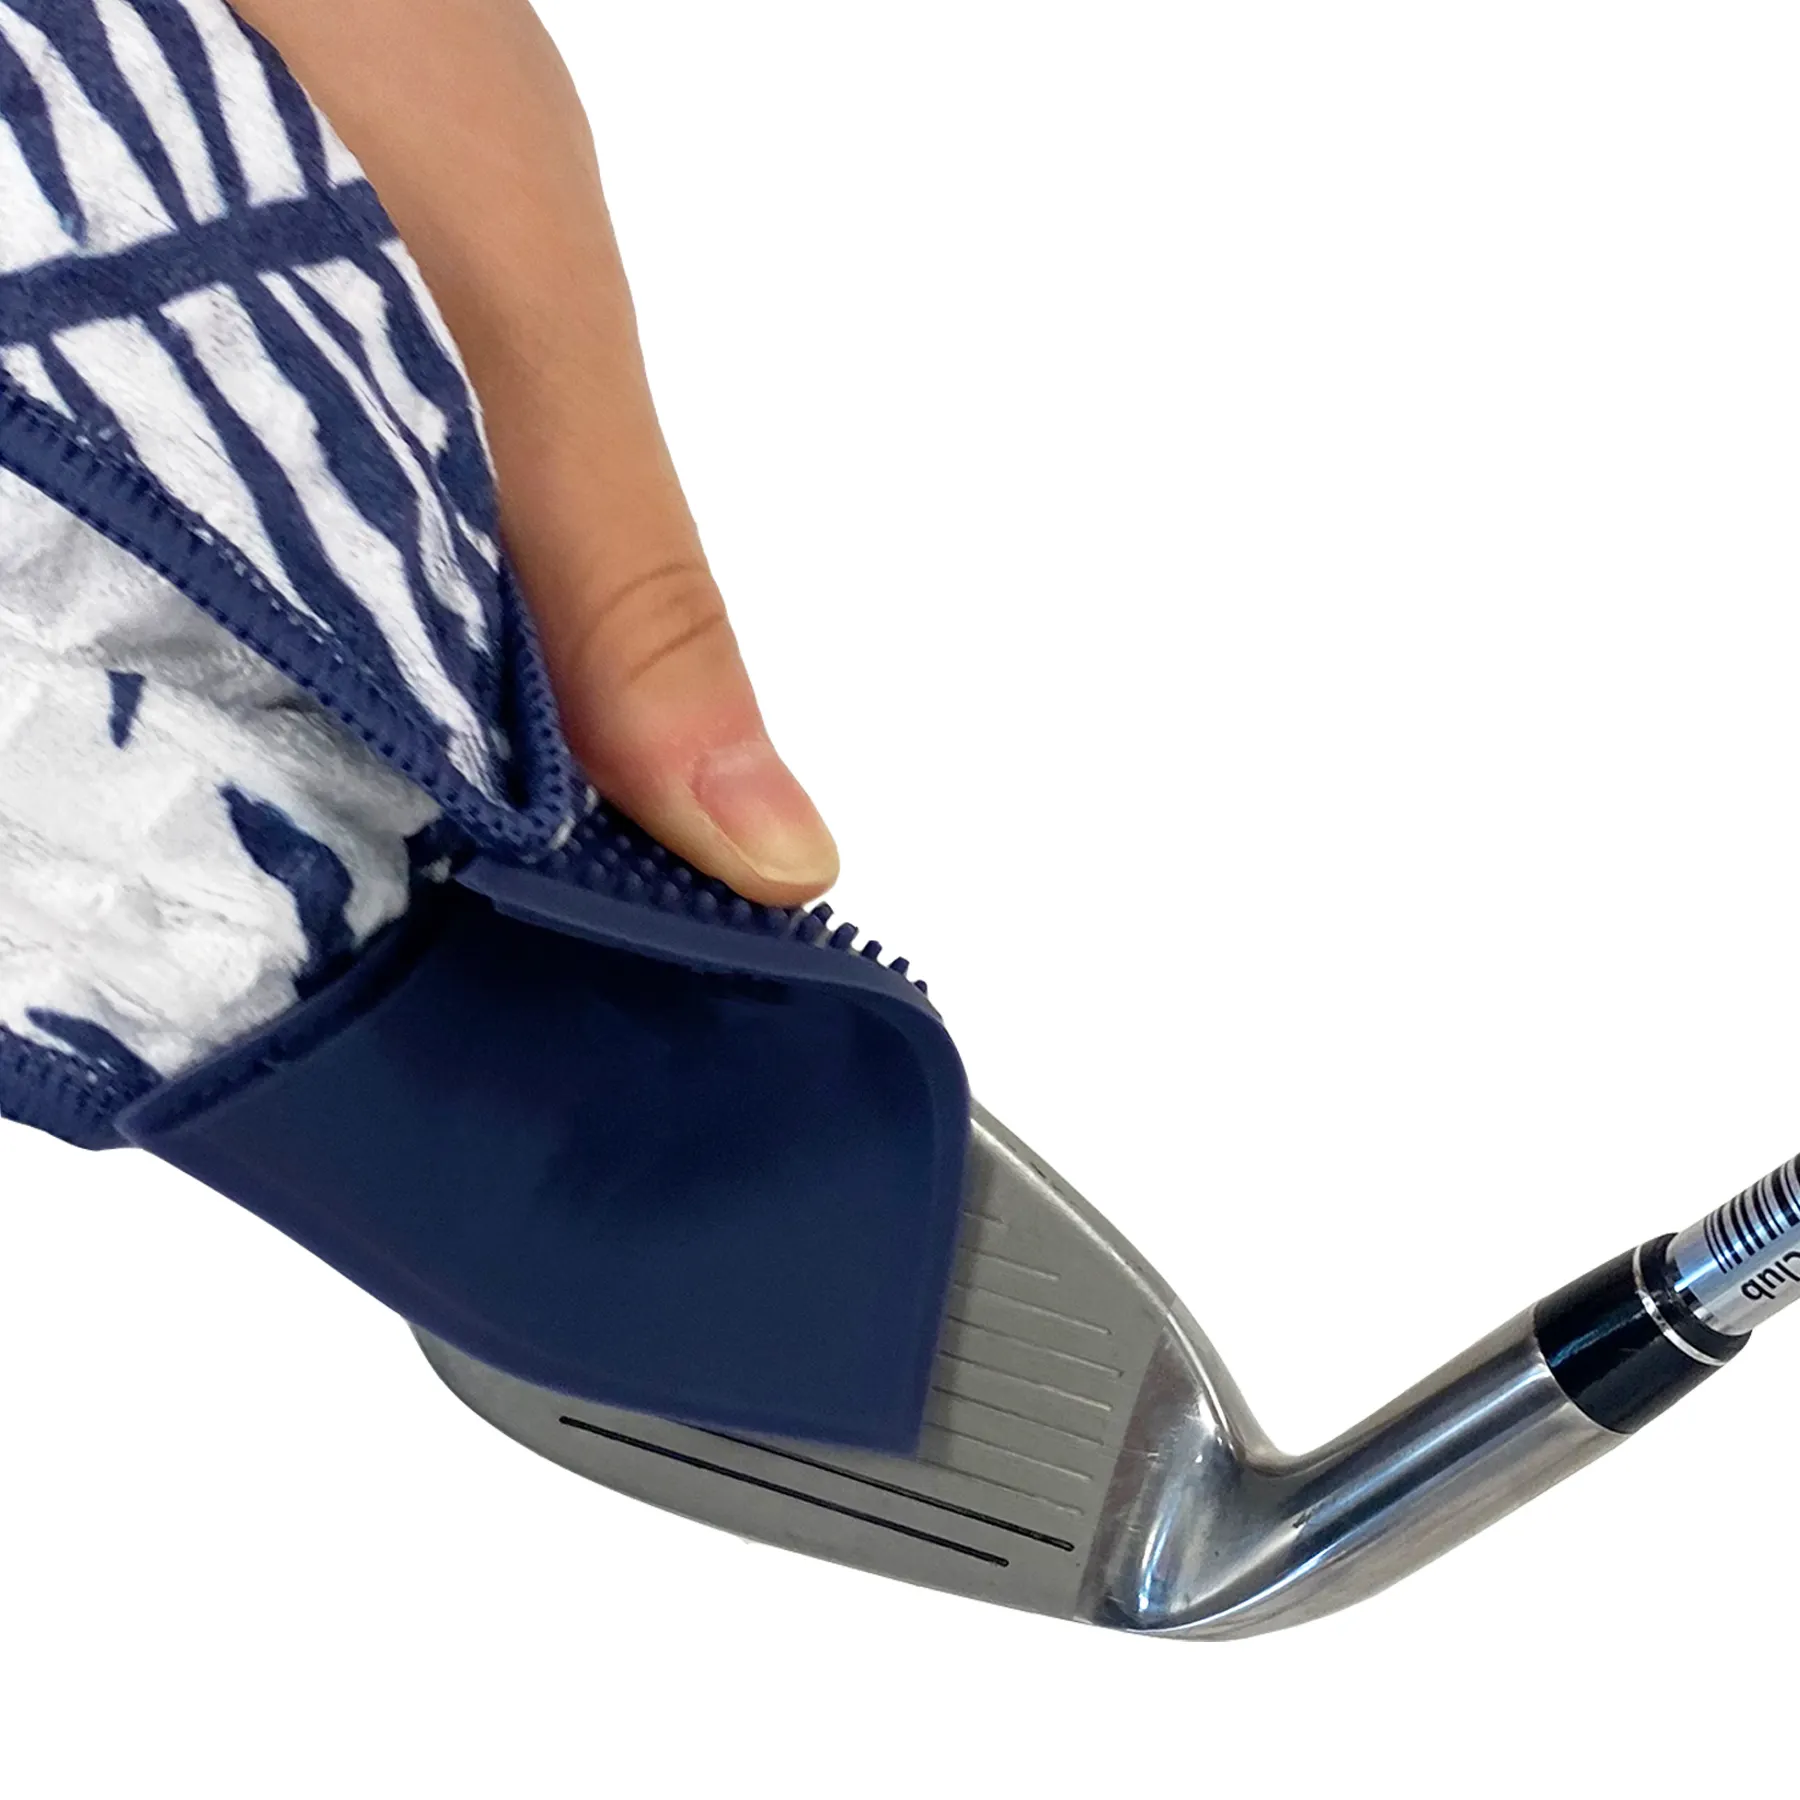 Mehrzweck 2 in 1 Bürste Waffel Golf Handtuch mit benutzer definierten Schmutz peeling Seite für Club Groove Reinigung